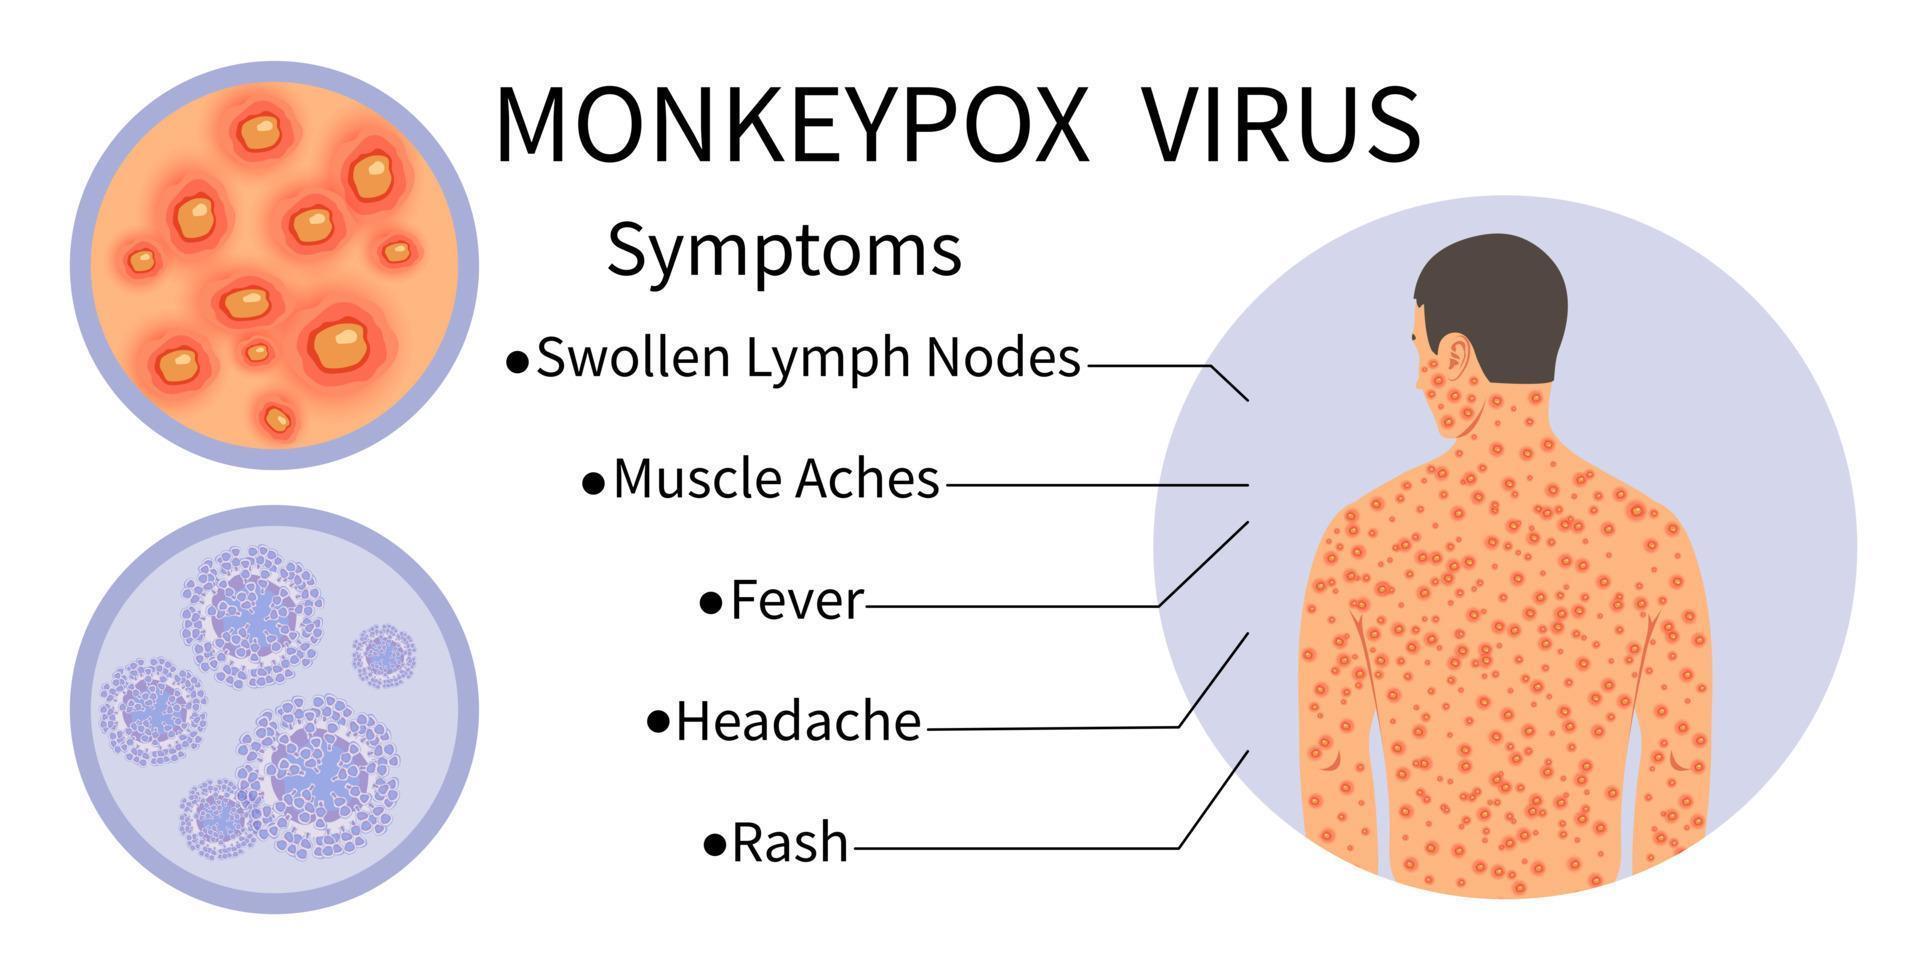 pancarta del virus de la viruela del mono para la concienciación de los síntomas. Infografía de los síntomas del virus de la viruela del mono. cuerpo humano con erupción. síntomas de la enfermedad: ganglios linfáticos inflamados, dolores musculares, fiebre, dolor de cabeza, erupción.vector. vector